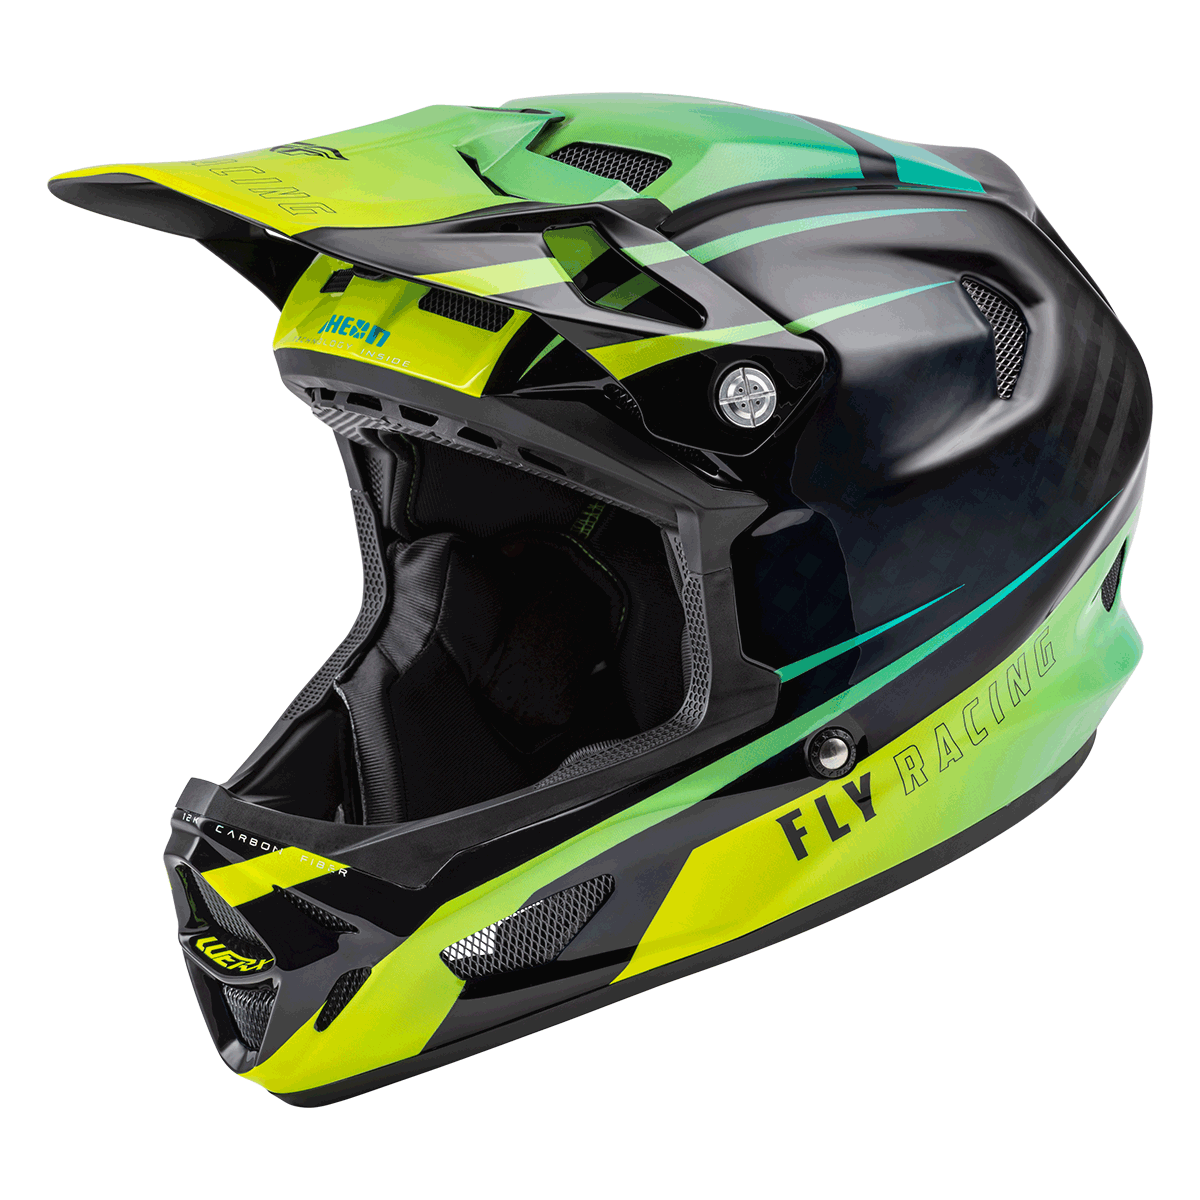 FLY Racing Werx-R Carbon Mountain Bike Helmet 73-9223YL